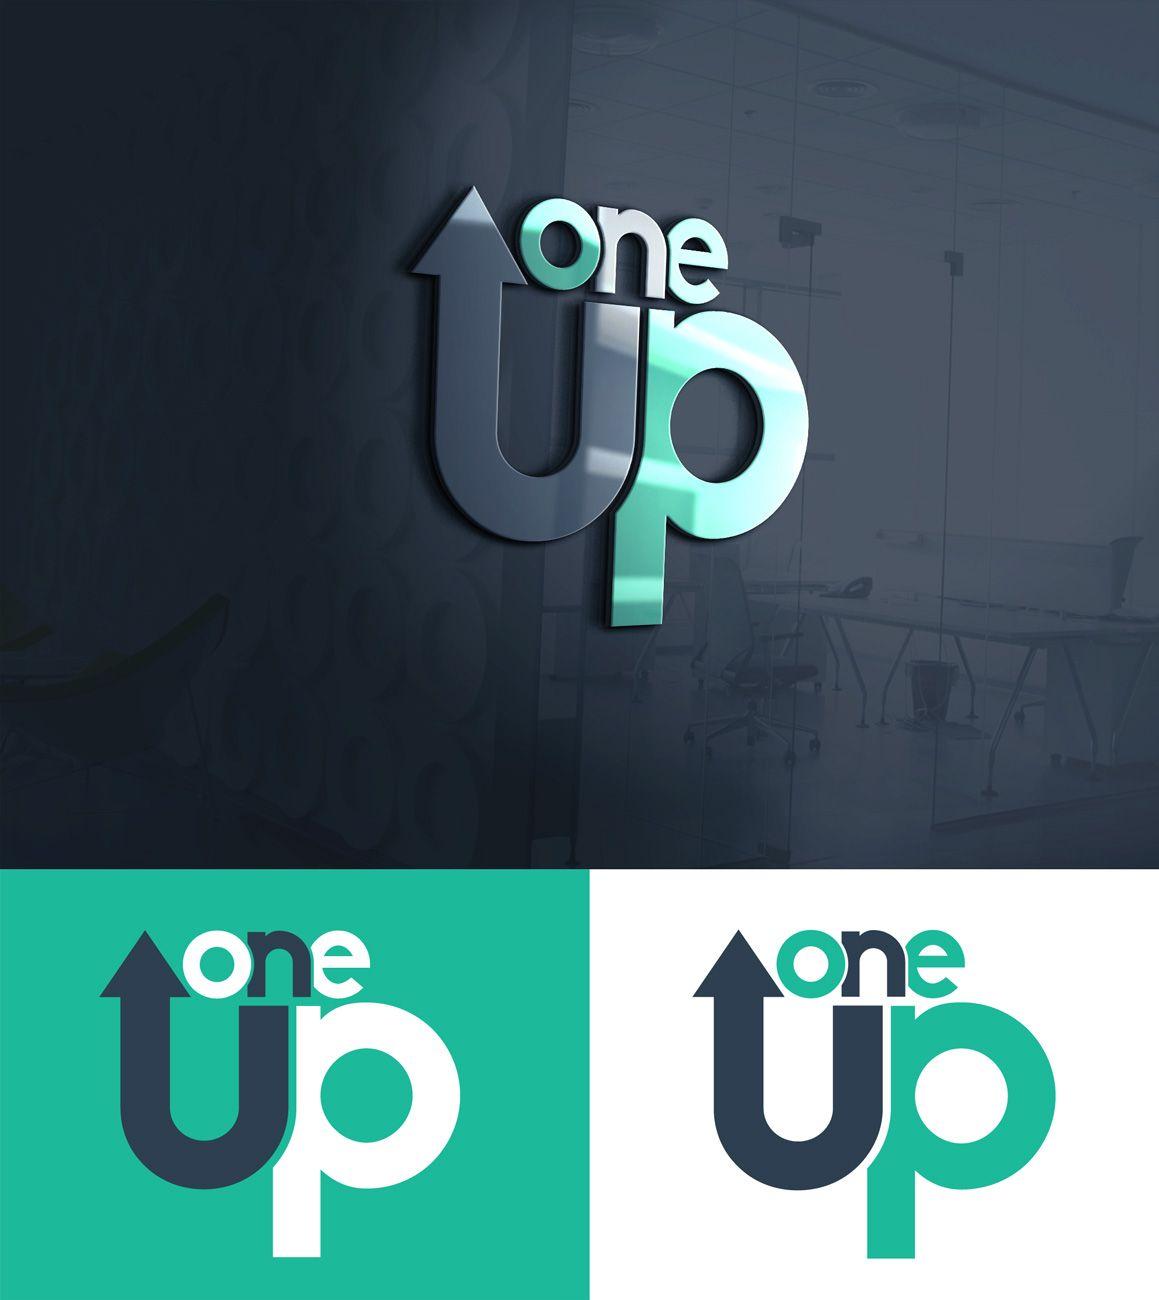 1UP Logo - Modern, Playful, Bank Logo Design for 1 UP or One Up by Black ...